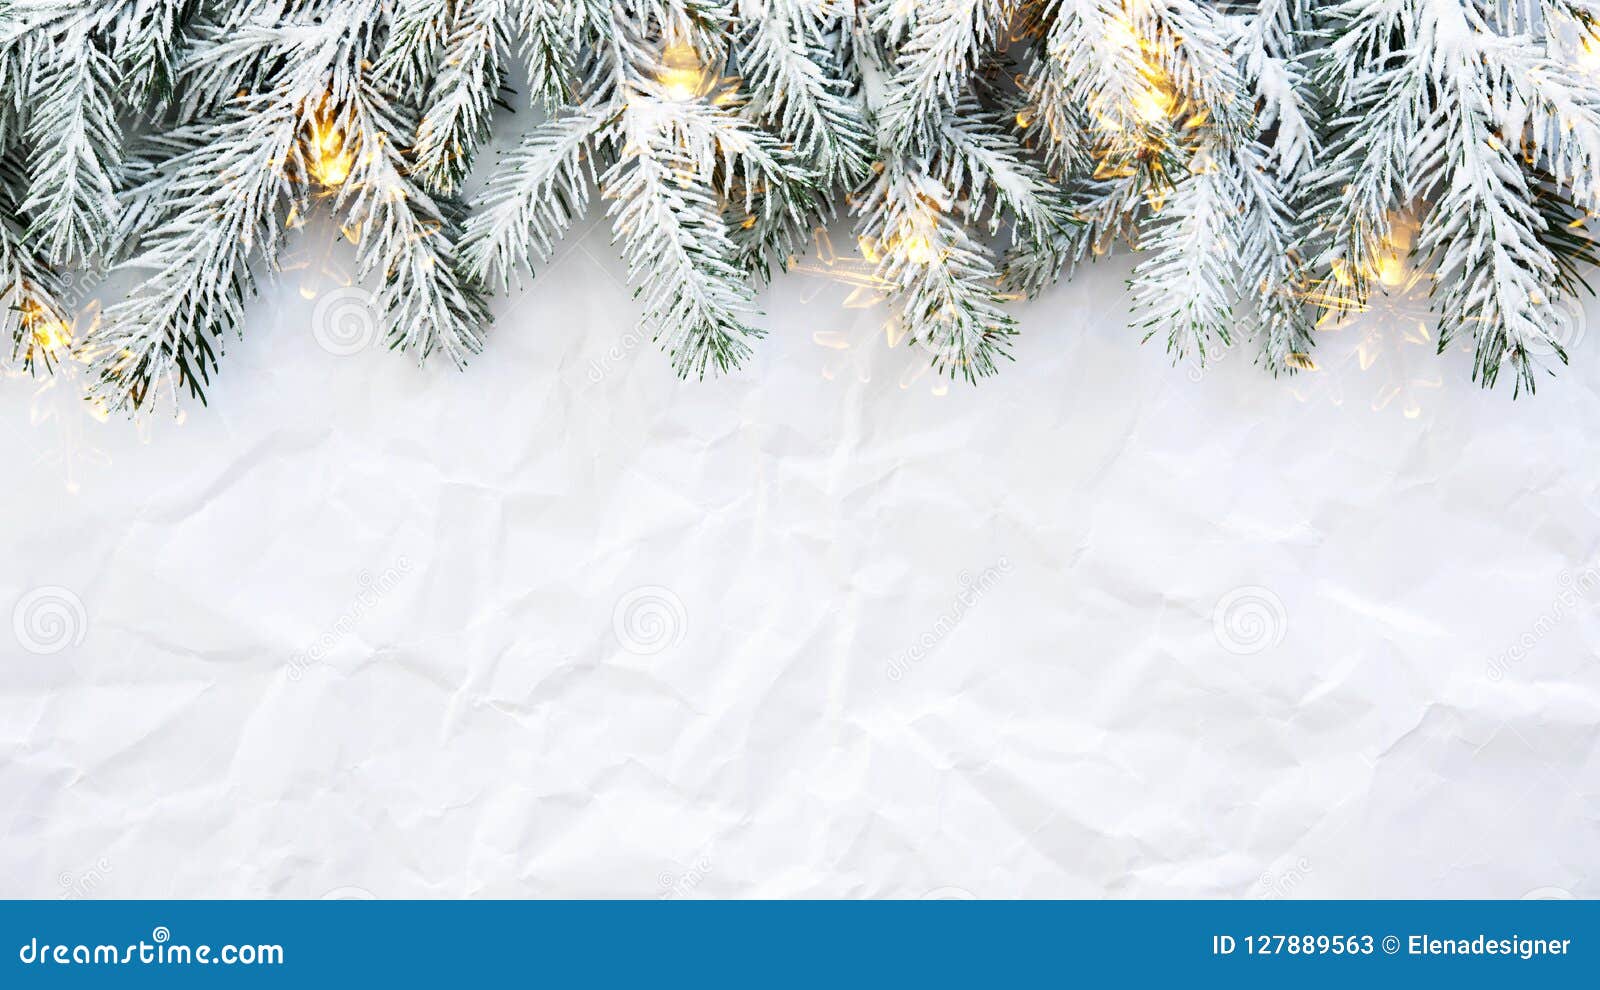 Nền trắng cây thông Giáng sinh: Lấp lánh ánh đèn phát ra từ cây thông Giáng sinh trong bầu không khí se lạnh là một điều không thể thiếu cho một mùa giáng sinh hoàn hảo. Tận hưởng hình ảnh đẹp ngày giáng sinh với nền trắng toát của cây thông trang trí lung linh.